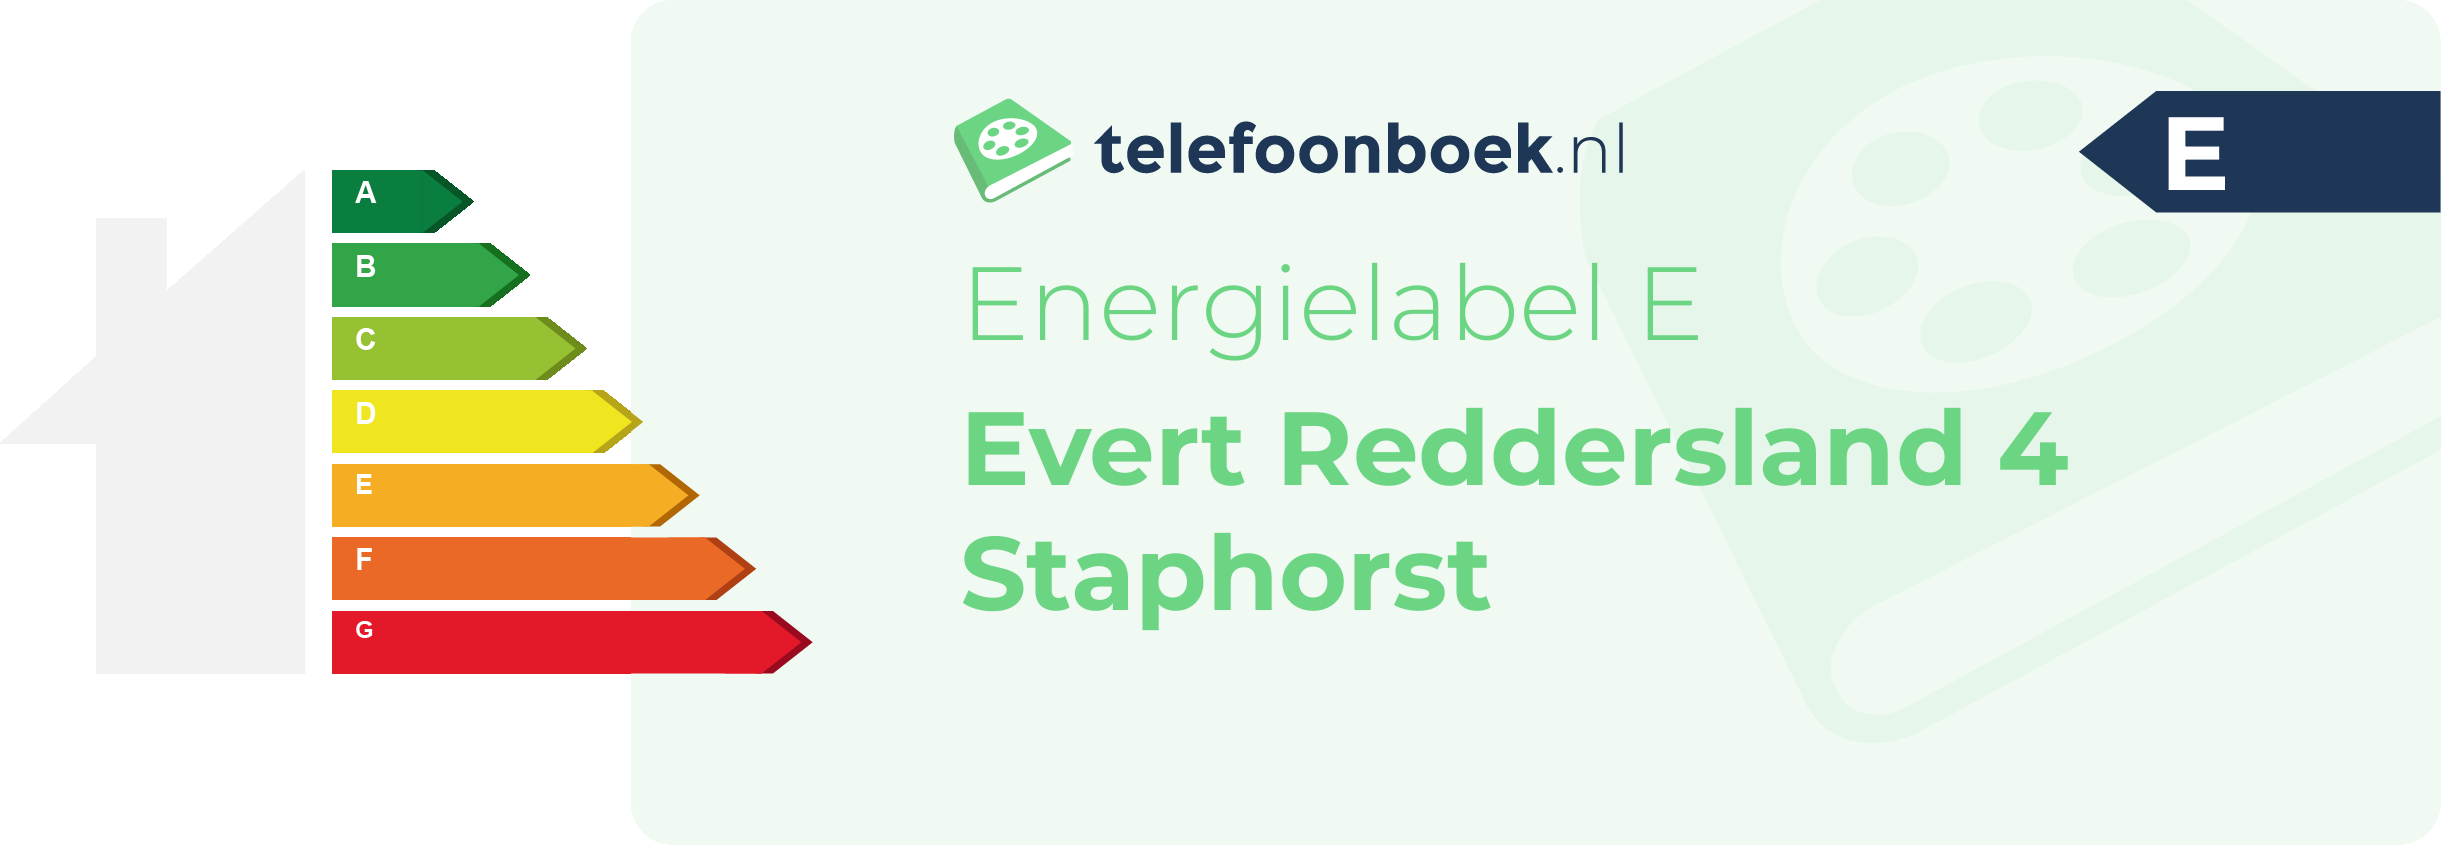 Energielabel Evert Reddersland 4 Staphorst